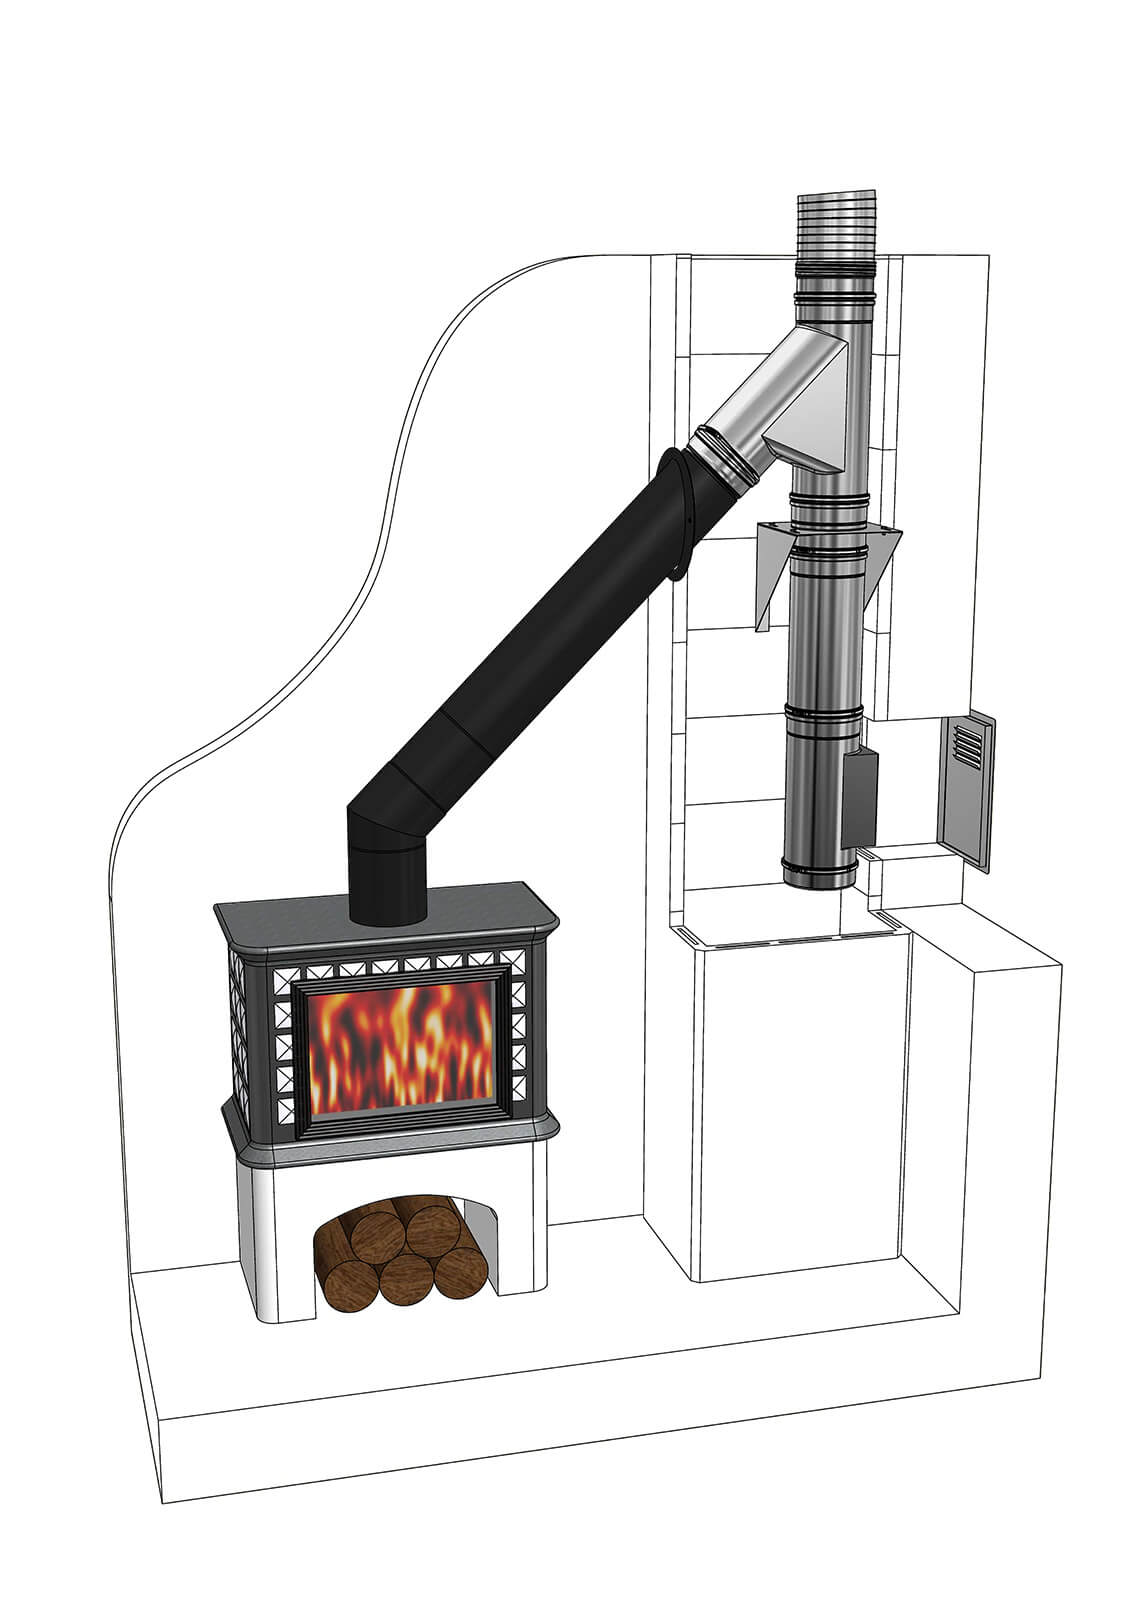 Tubi carbonio nero 2 mm per stufe, camini, caldaie, forni a legna